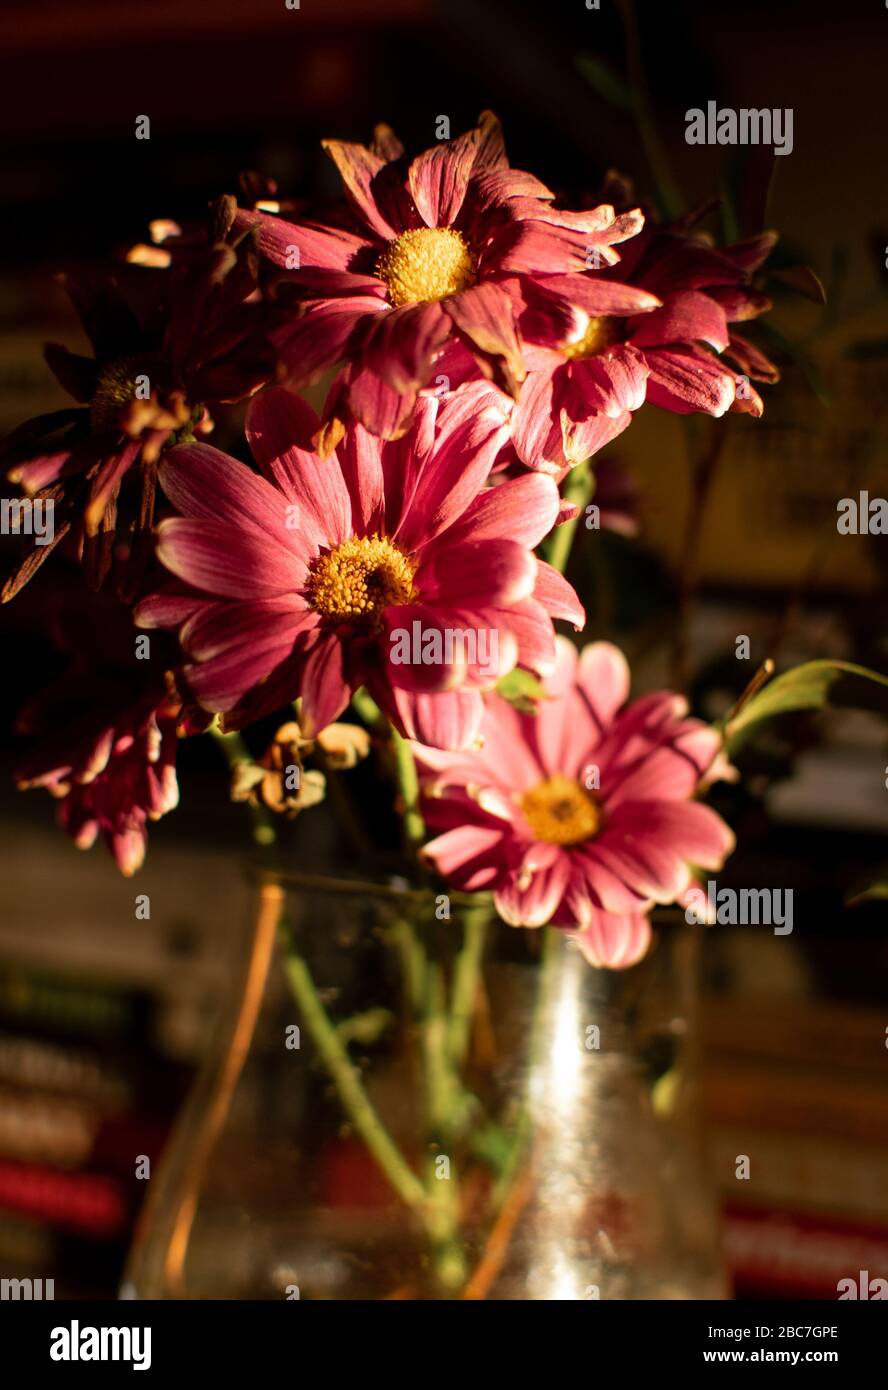 Un groupe de fleurs magenta / rose à l'intérieur d'une maison Banque D'Images